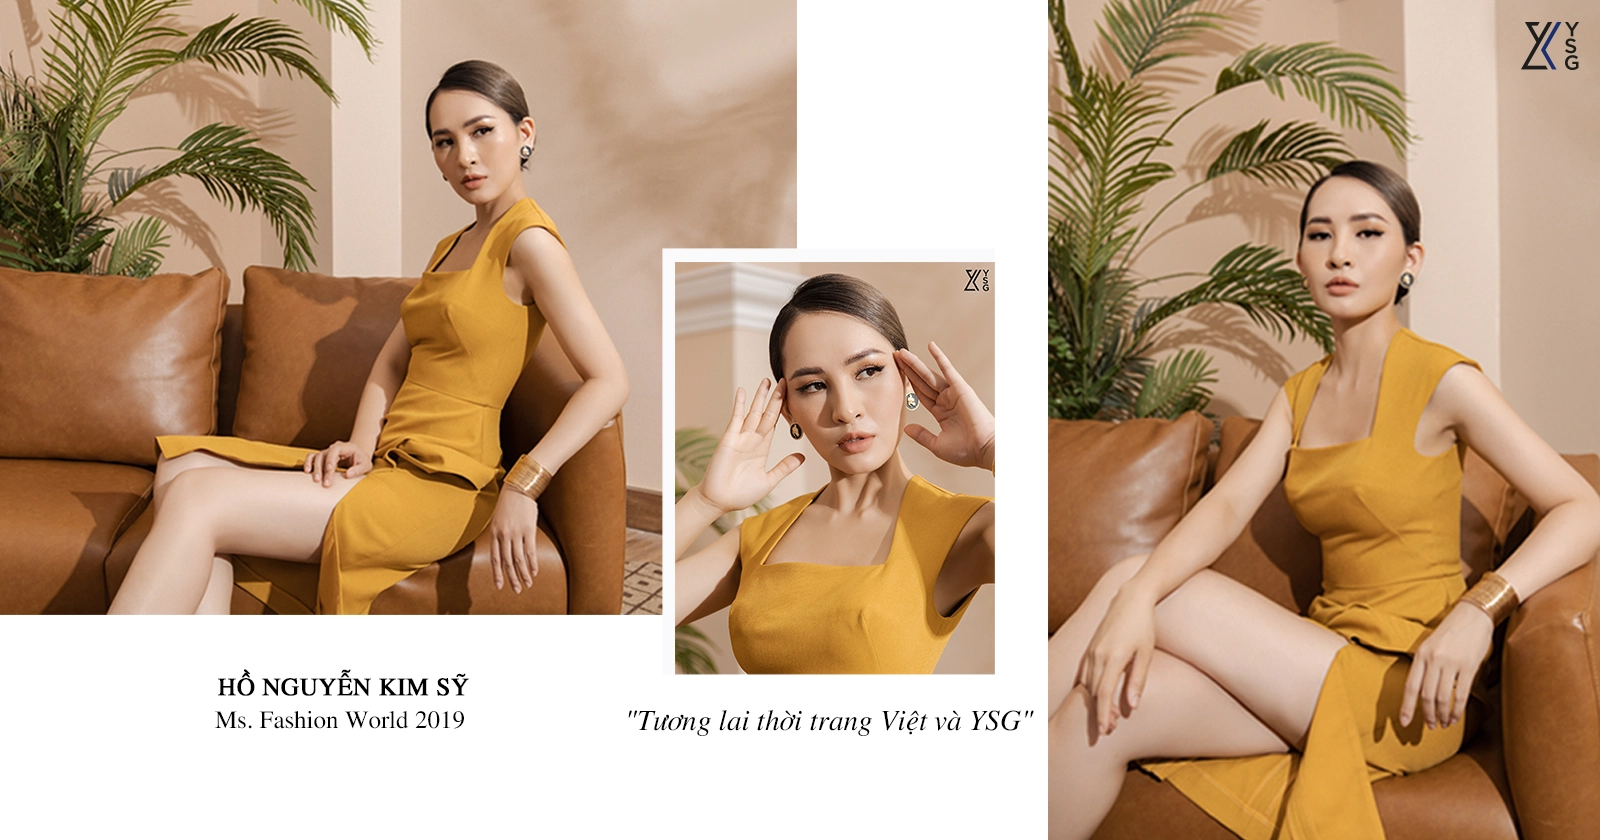 MS.Fashion World 2019 - Hồ Nguyễn Kim Sỹ: " Tương lai thời trang Việt và YSG"